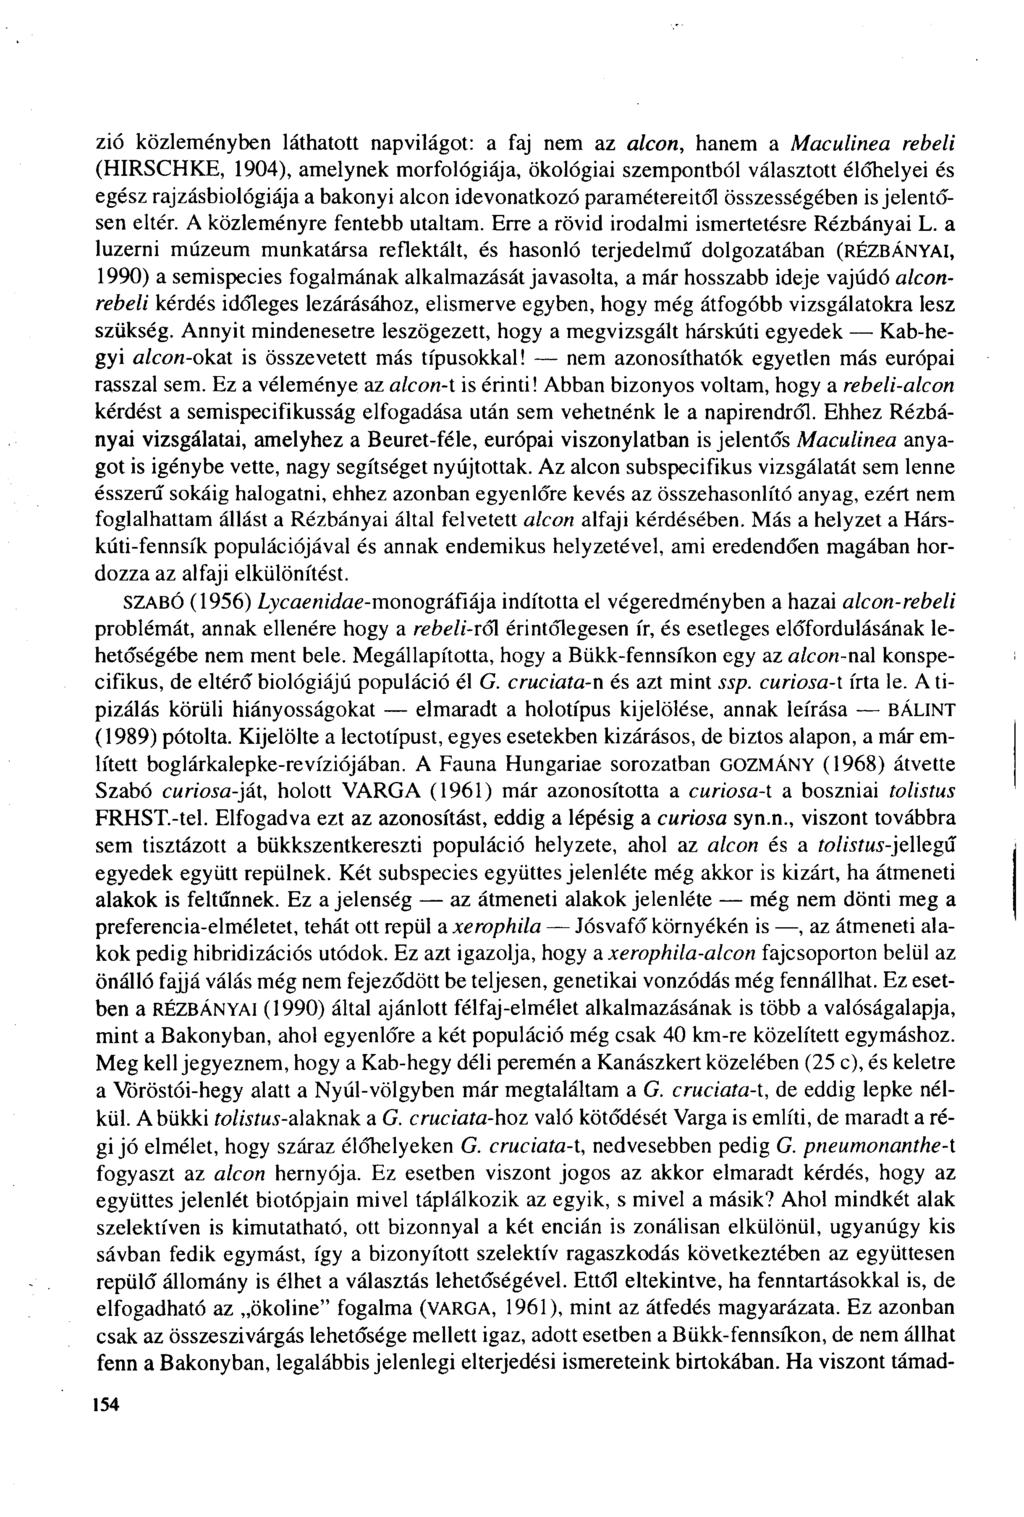 zid közleményben láthatott napvilágot: a faj nem az alcon, hanem a Maeulinea rebeli (HIRSCHKE, 1904), amelynek morfológiája, ökológiai szempontból választott élőhelyei és egész rajzásbiológiája a